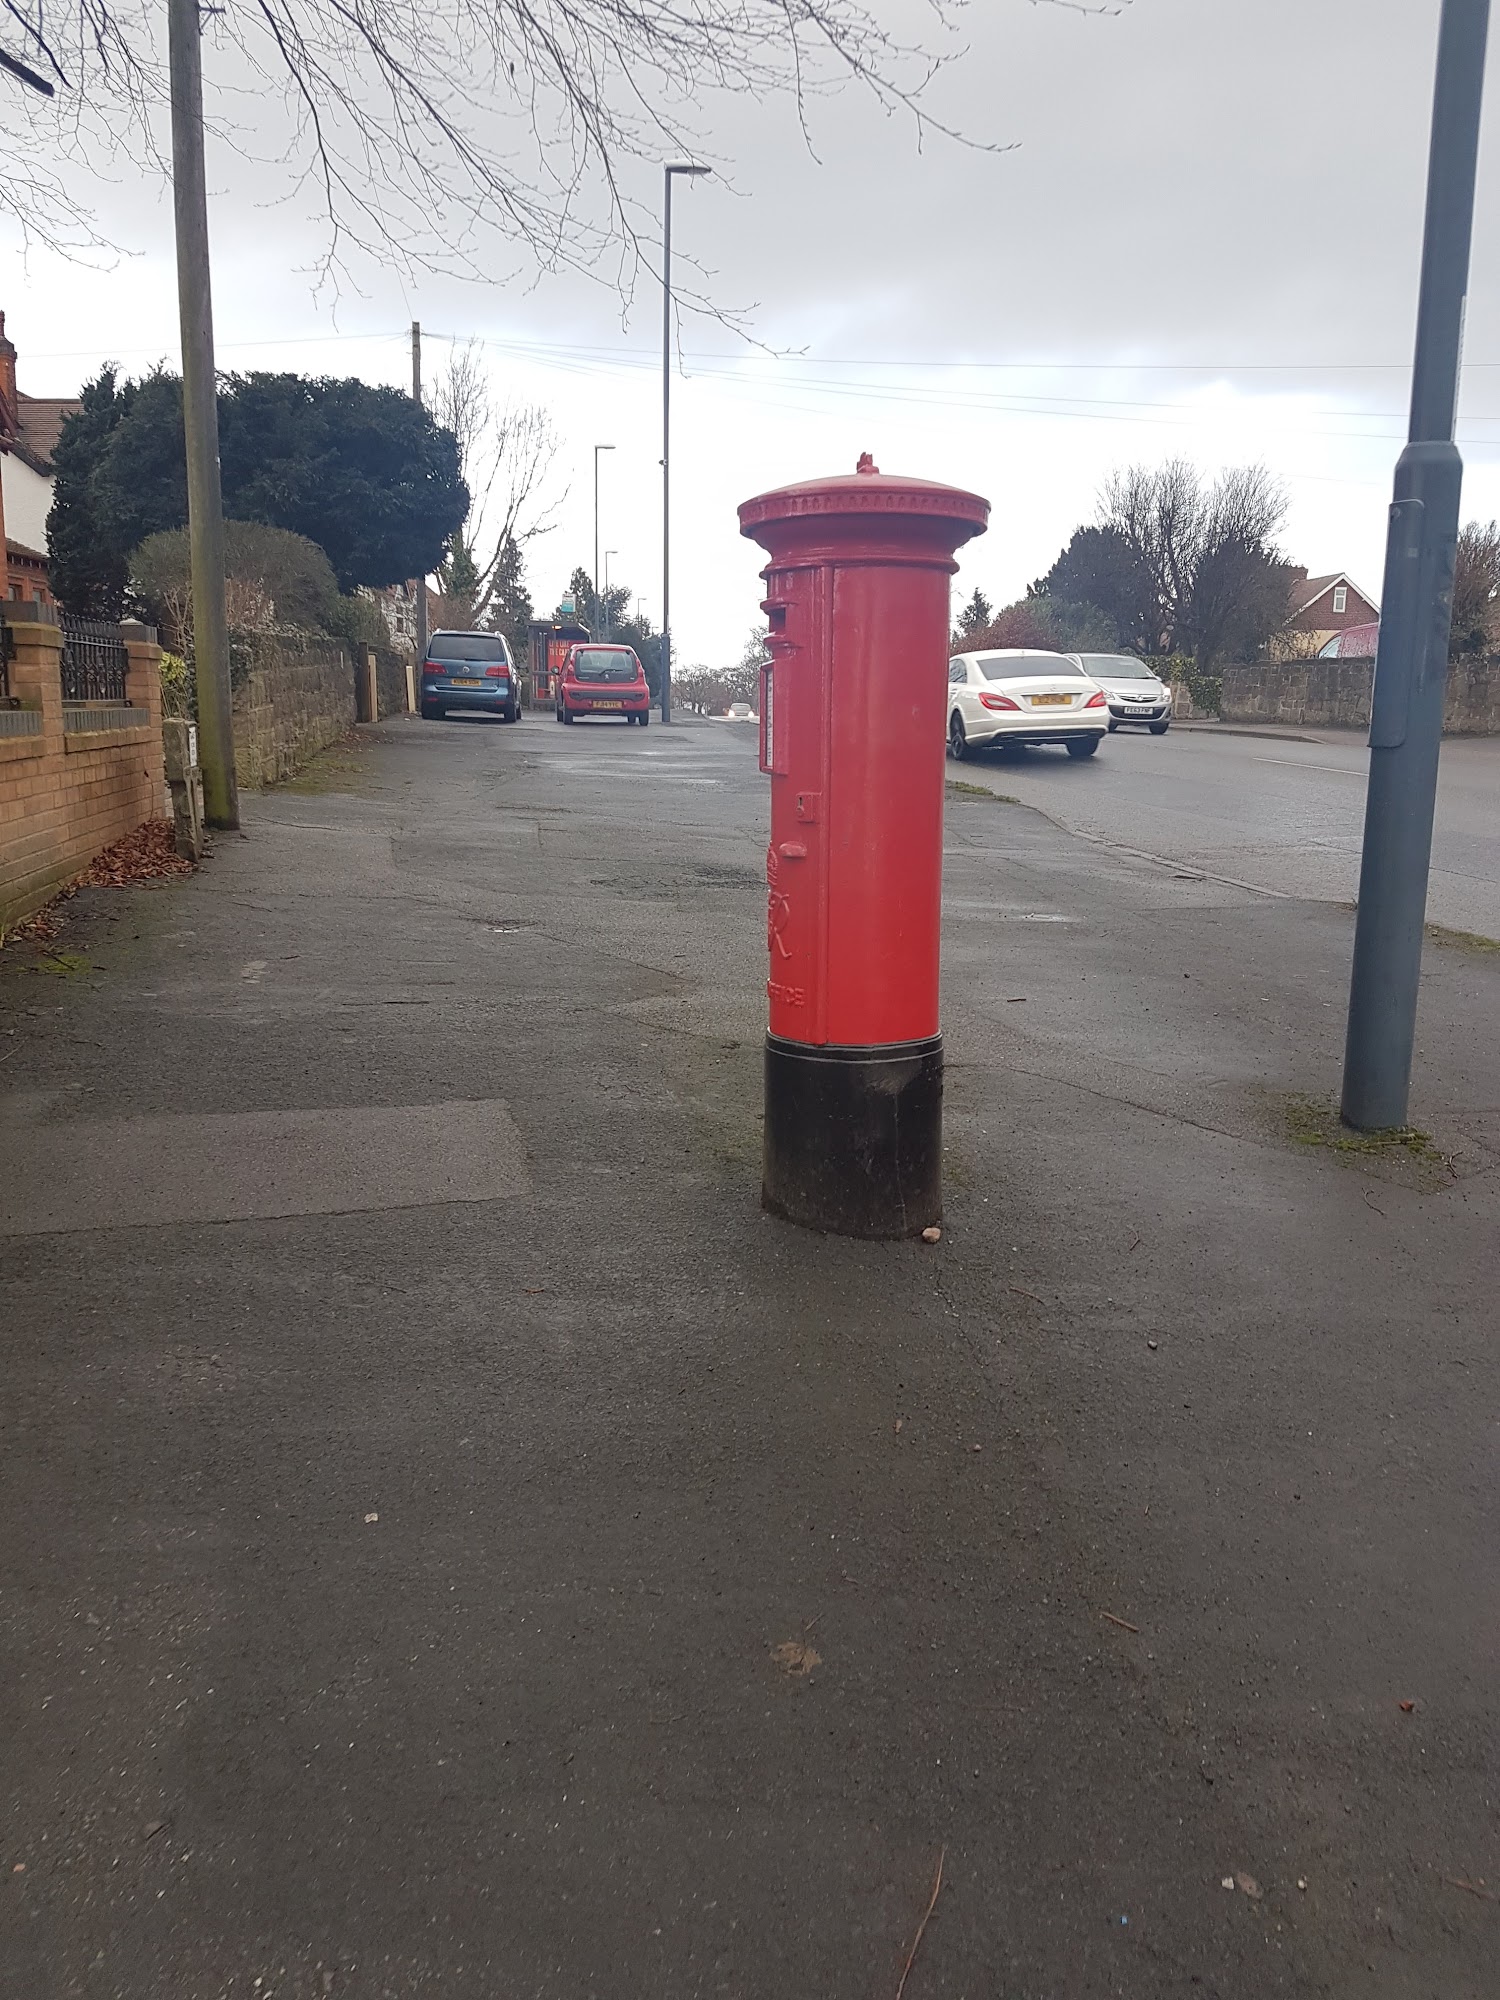 Royal Mail Post Box